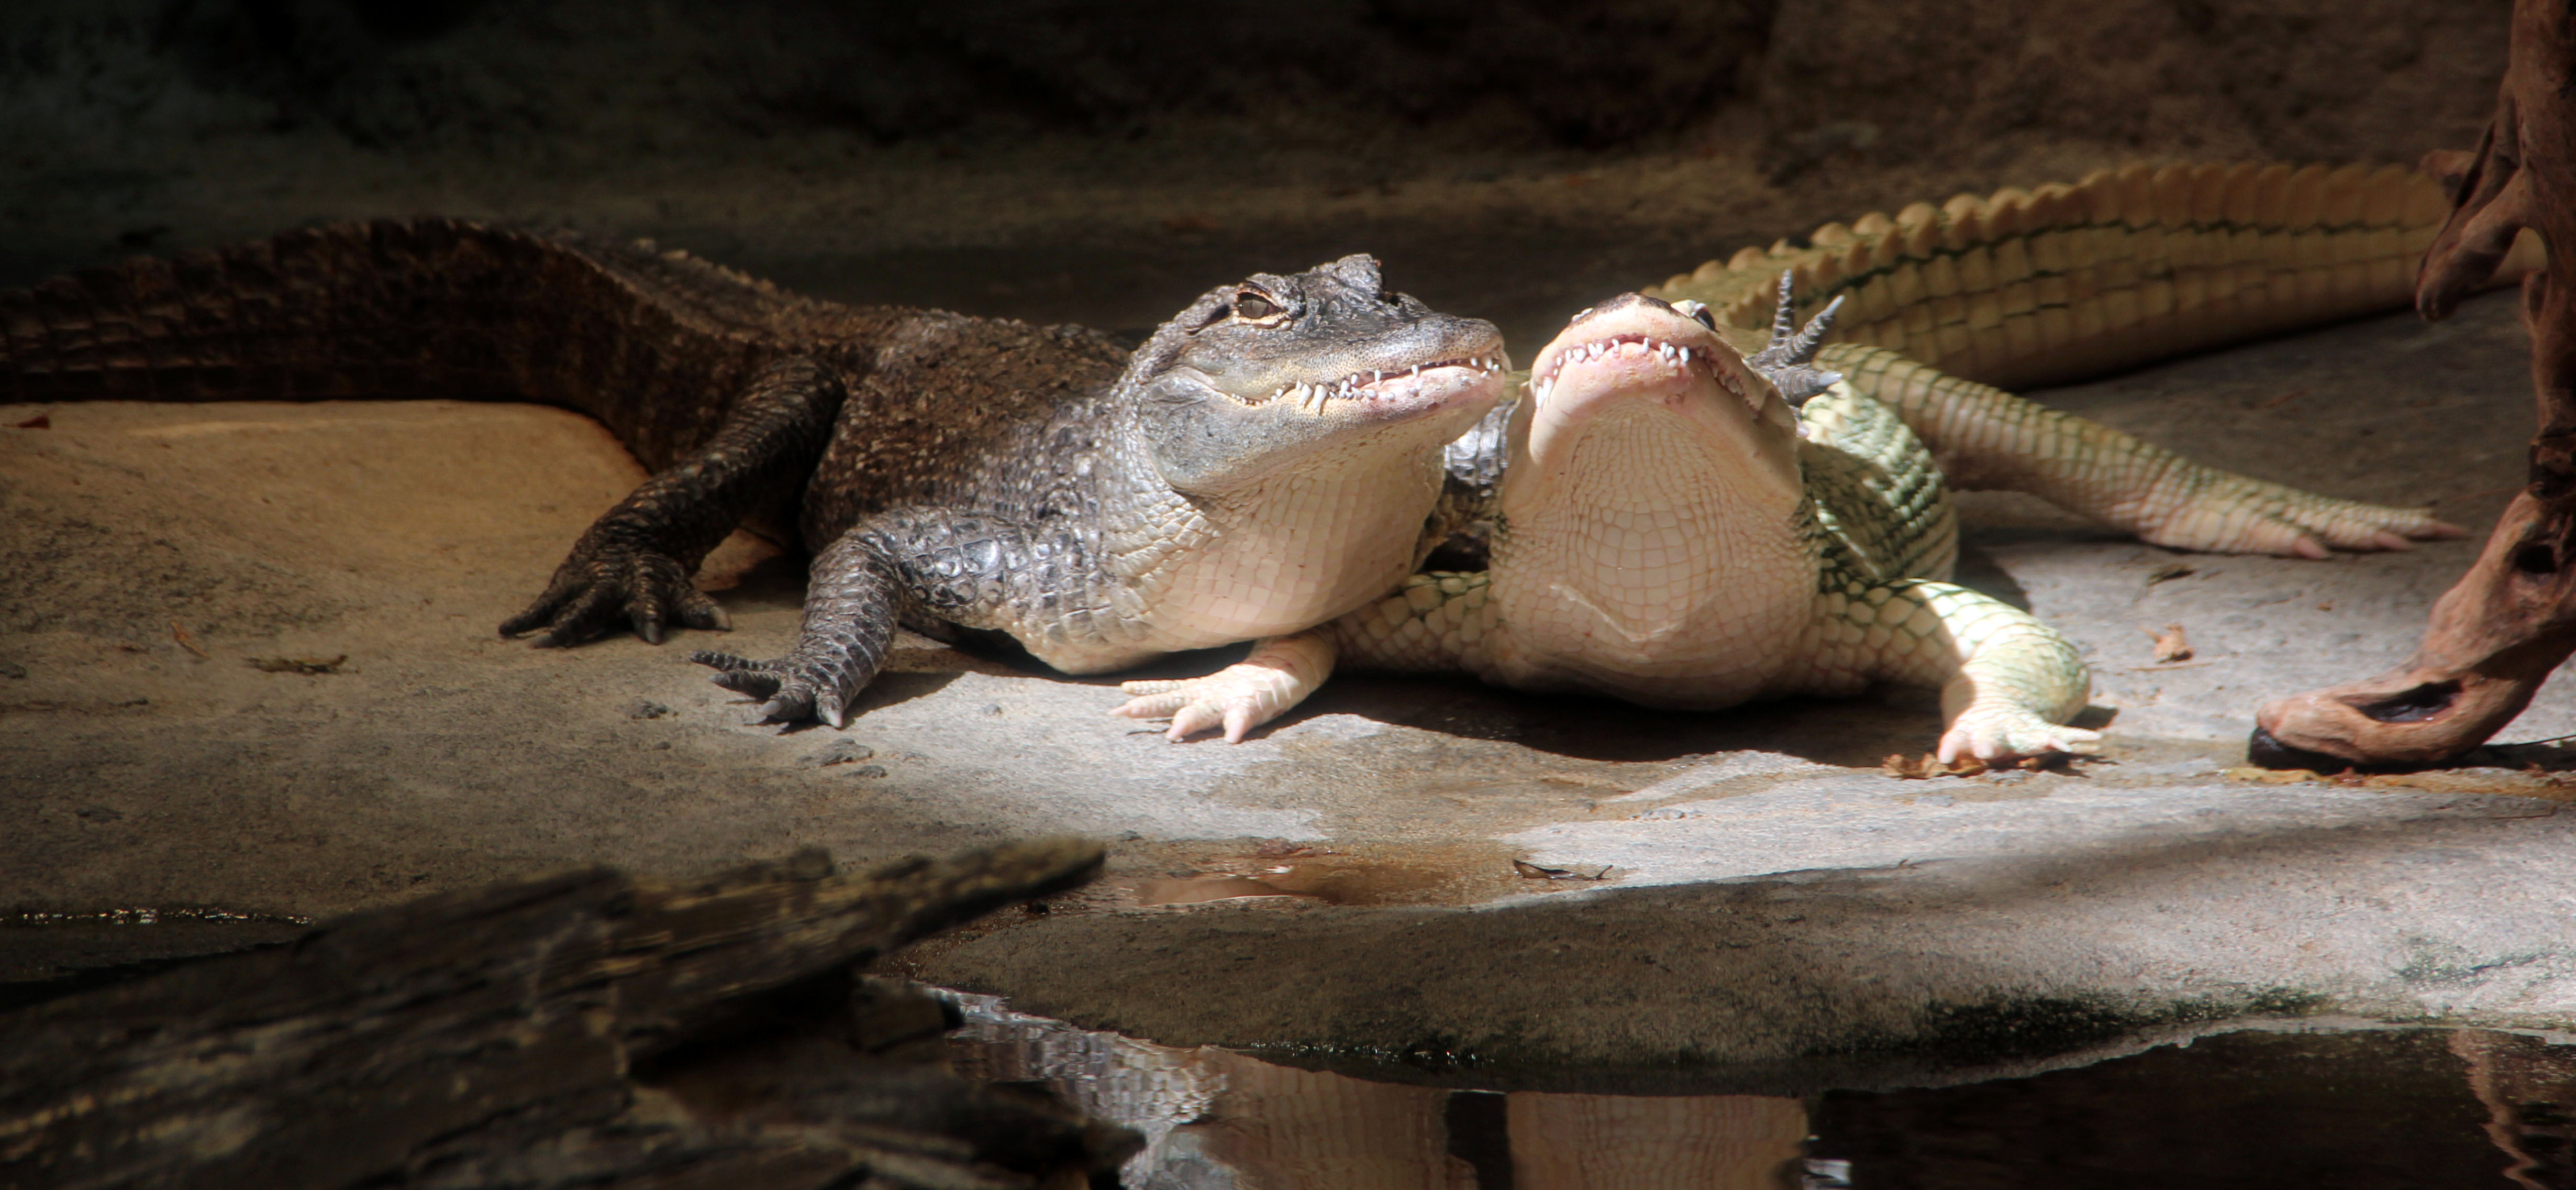 Alligators Smiling For the Camera – At the North Carolina Aquarium ...